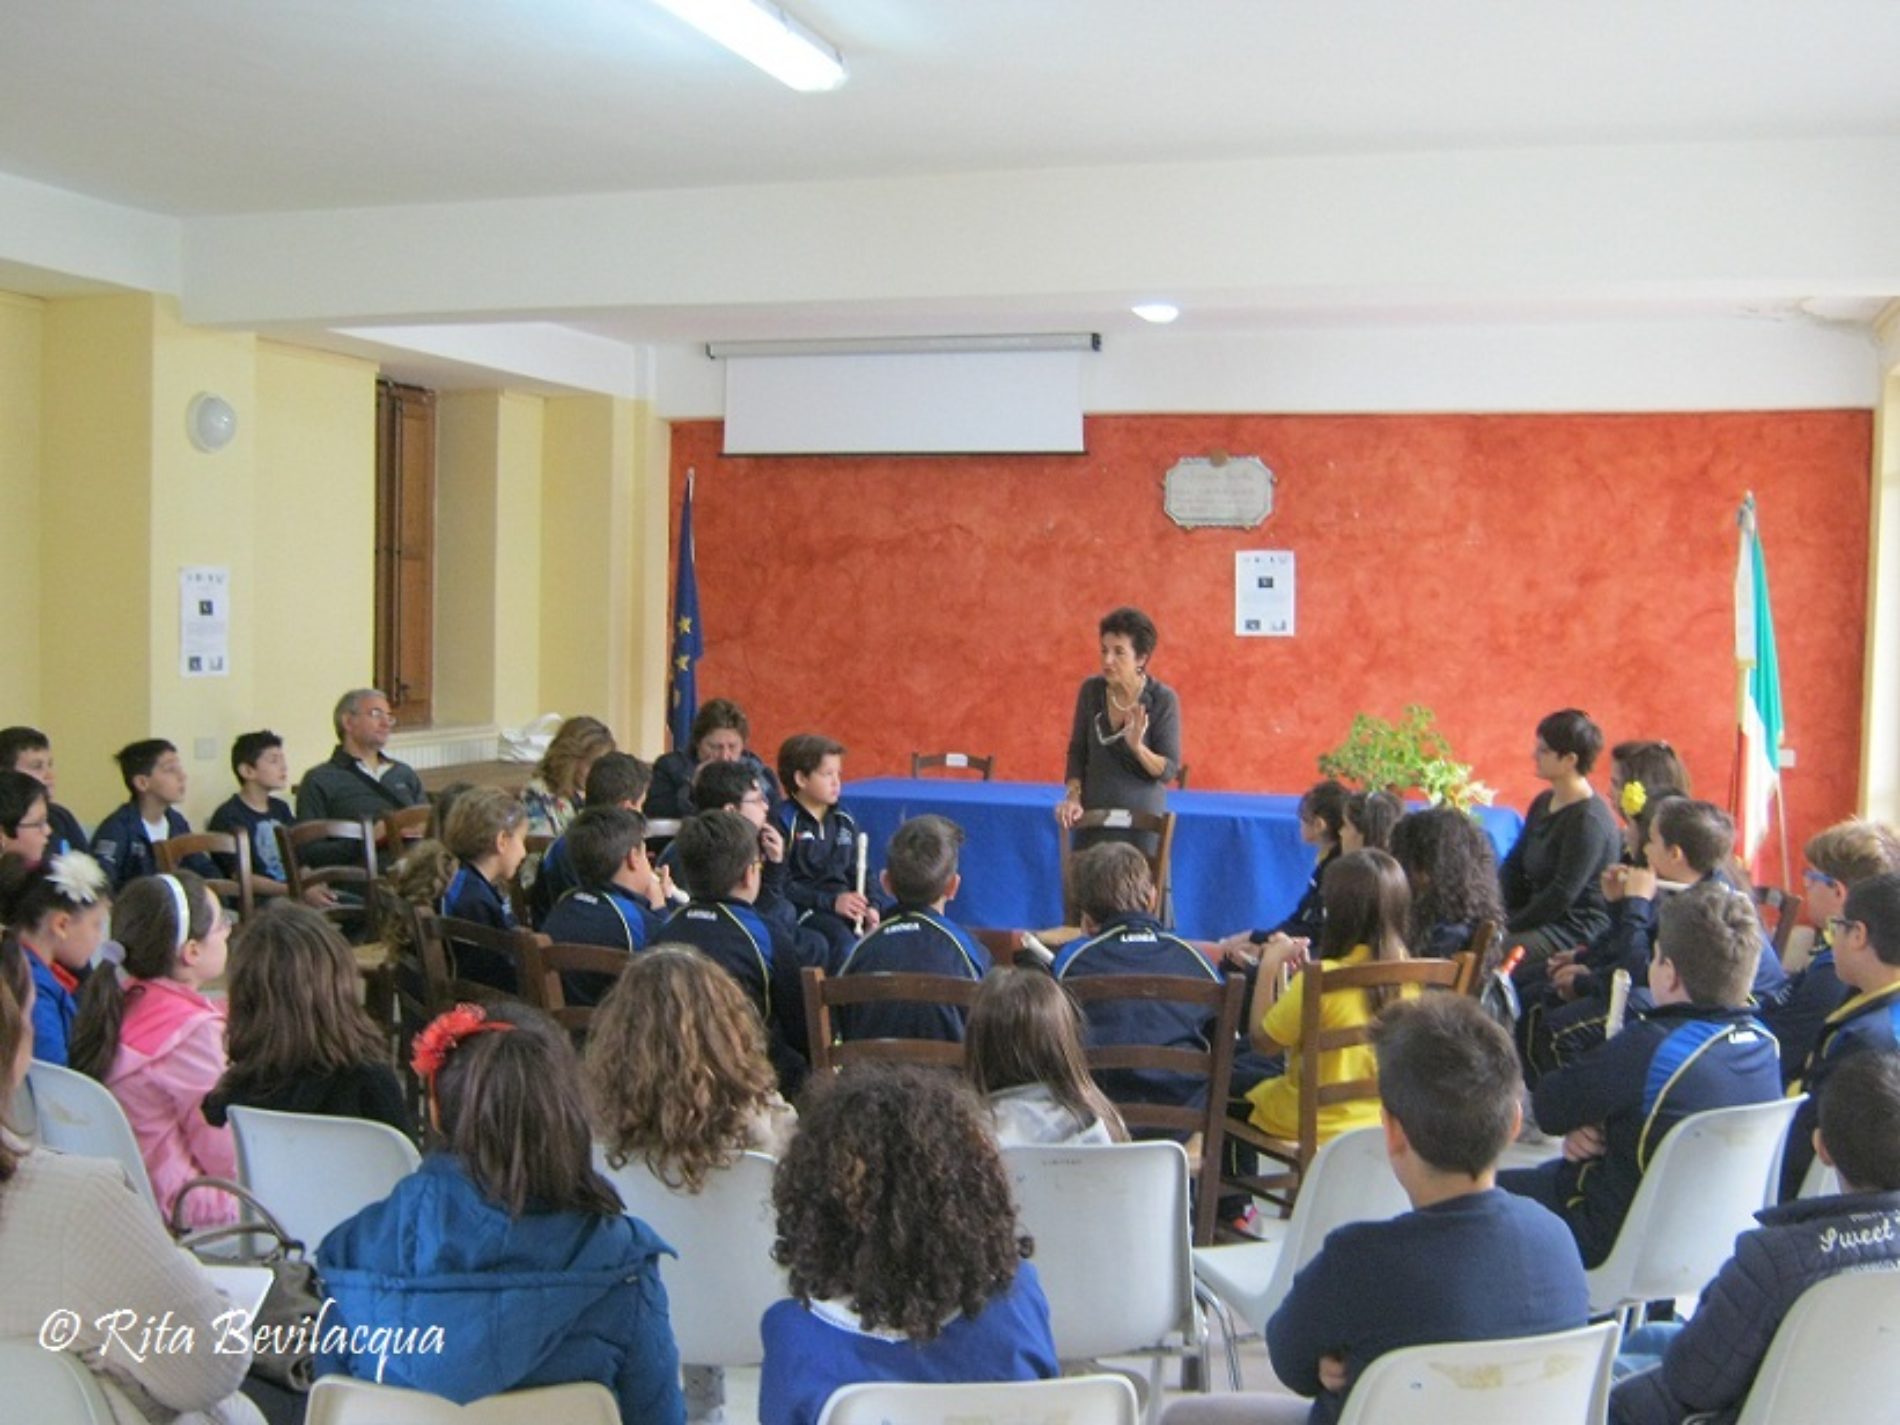 Oggi nella sala Convegni della Biblioteca Comunale di Barrafranca (EN) si è svolto l’evento LIBRIAMOCI. LETTURE AD ALTA VOCE